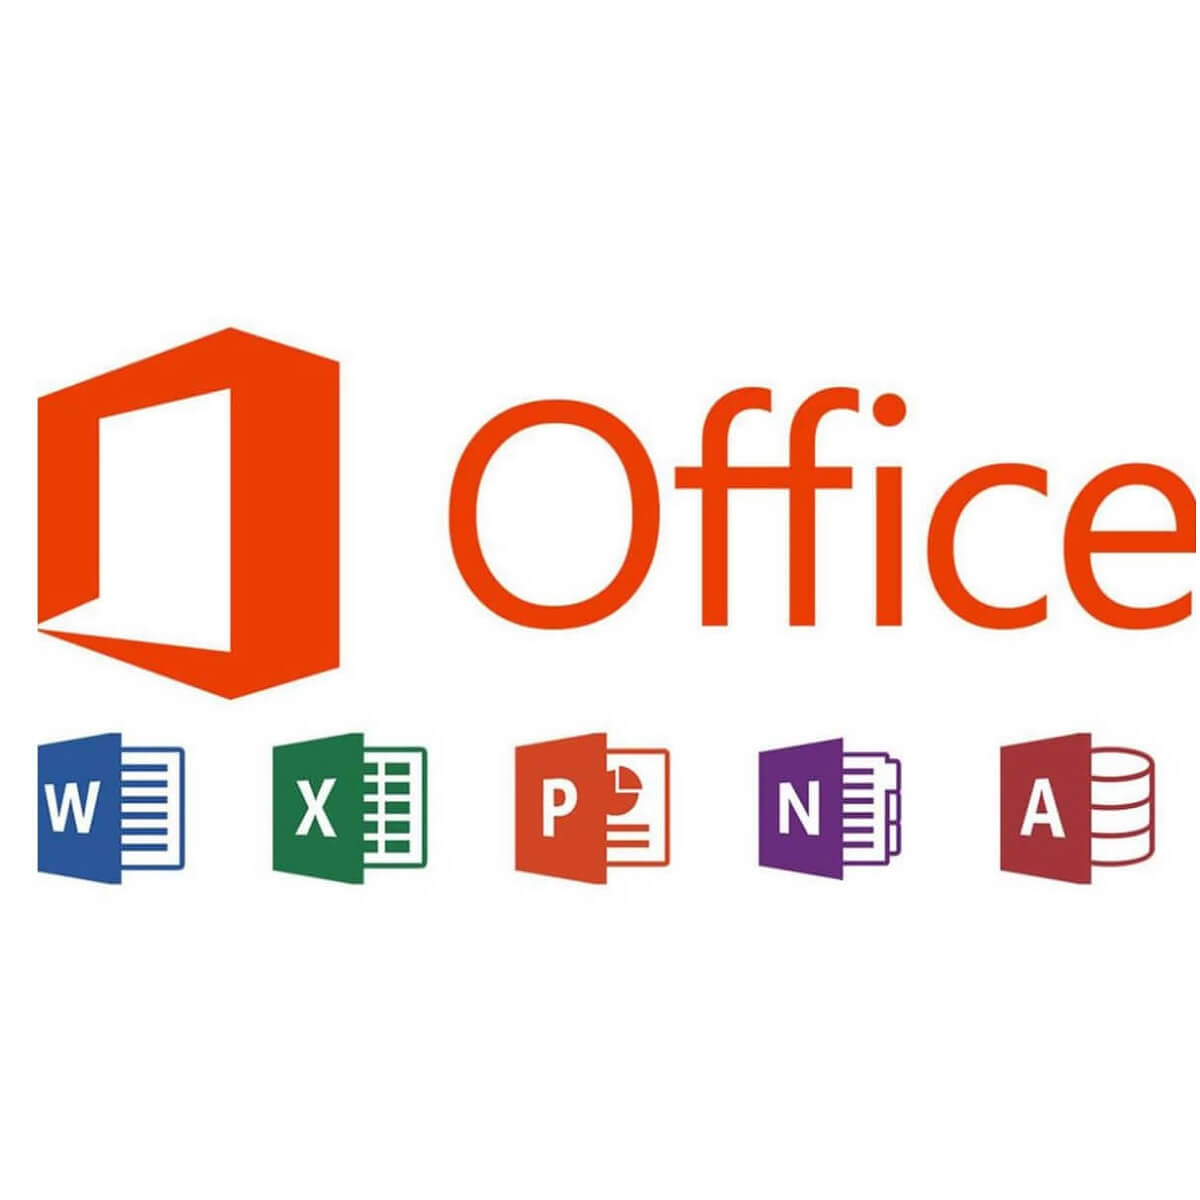 Microsoft Office desaparecerá ¿Qué pasará a partir de ahora? - Chapin TV